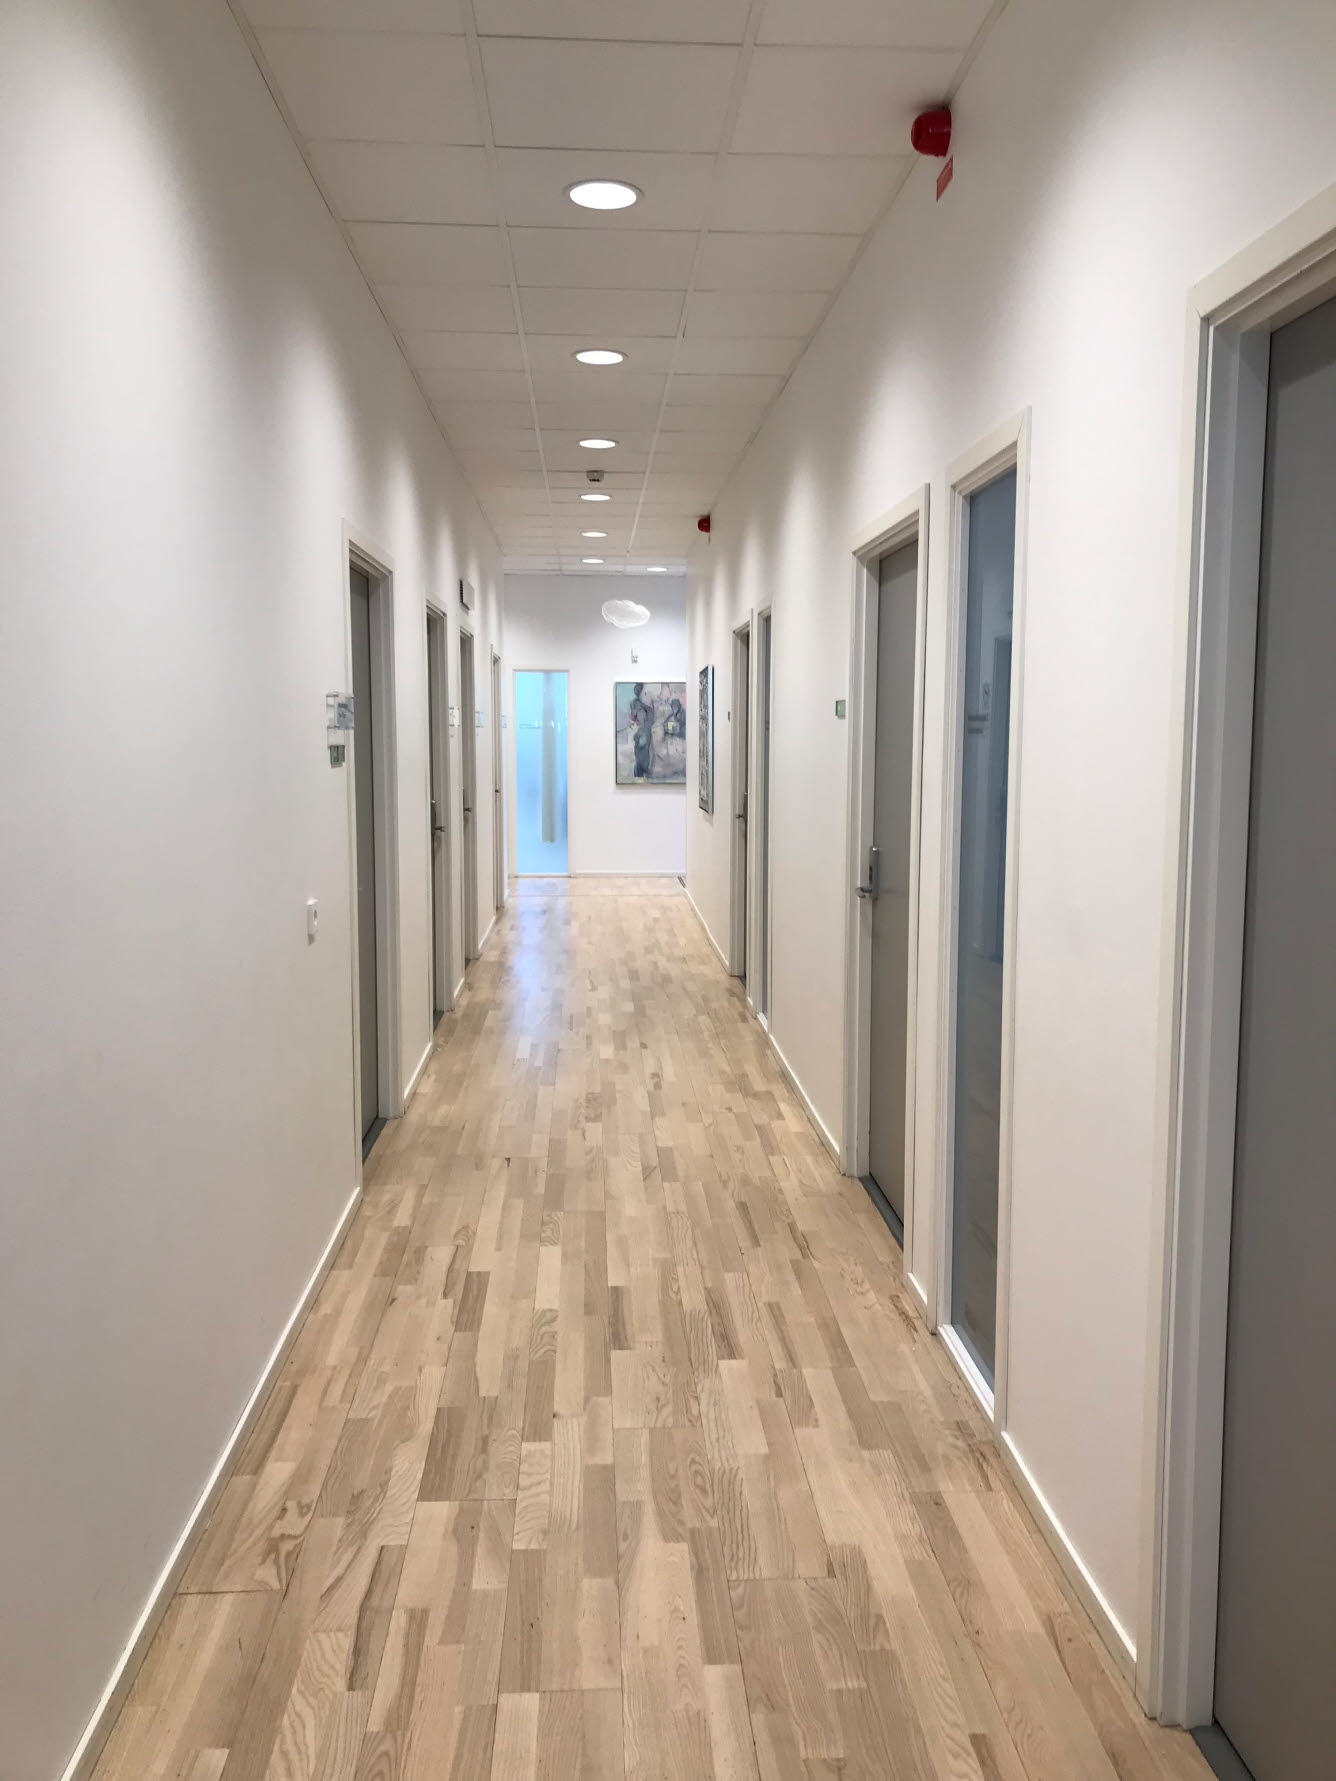 Foto på vårdcentralens vita korridor med tavlor.